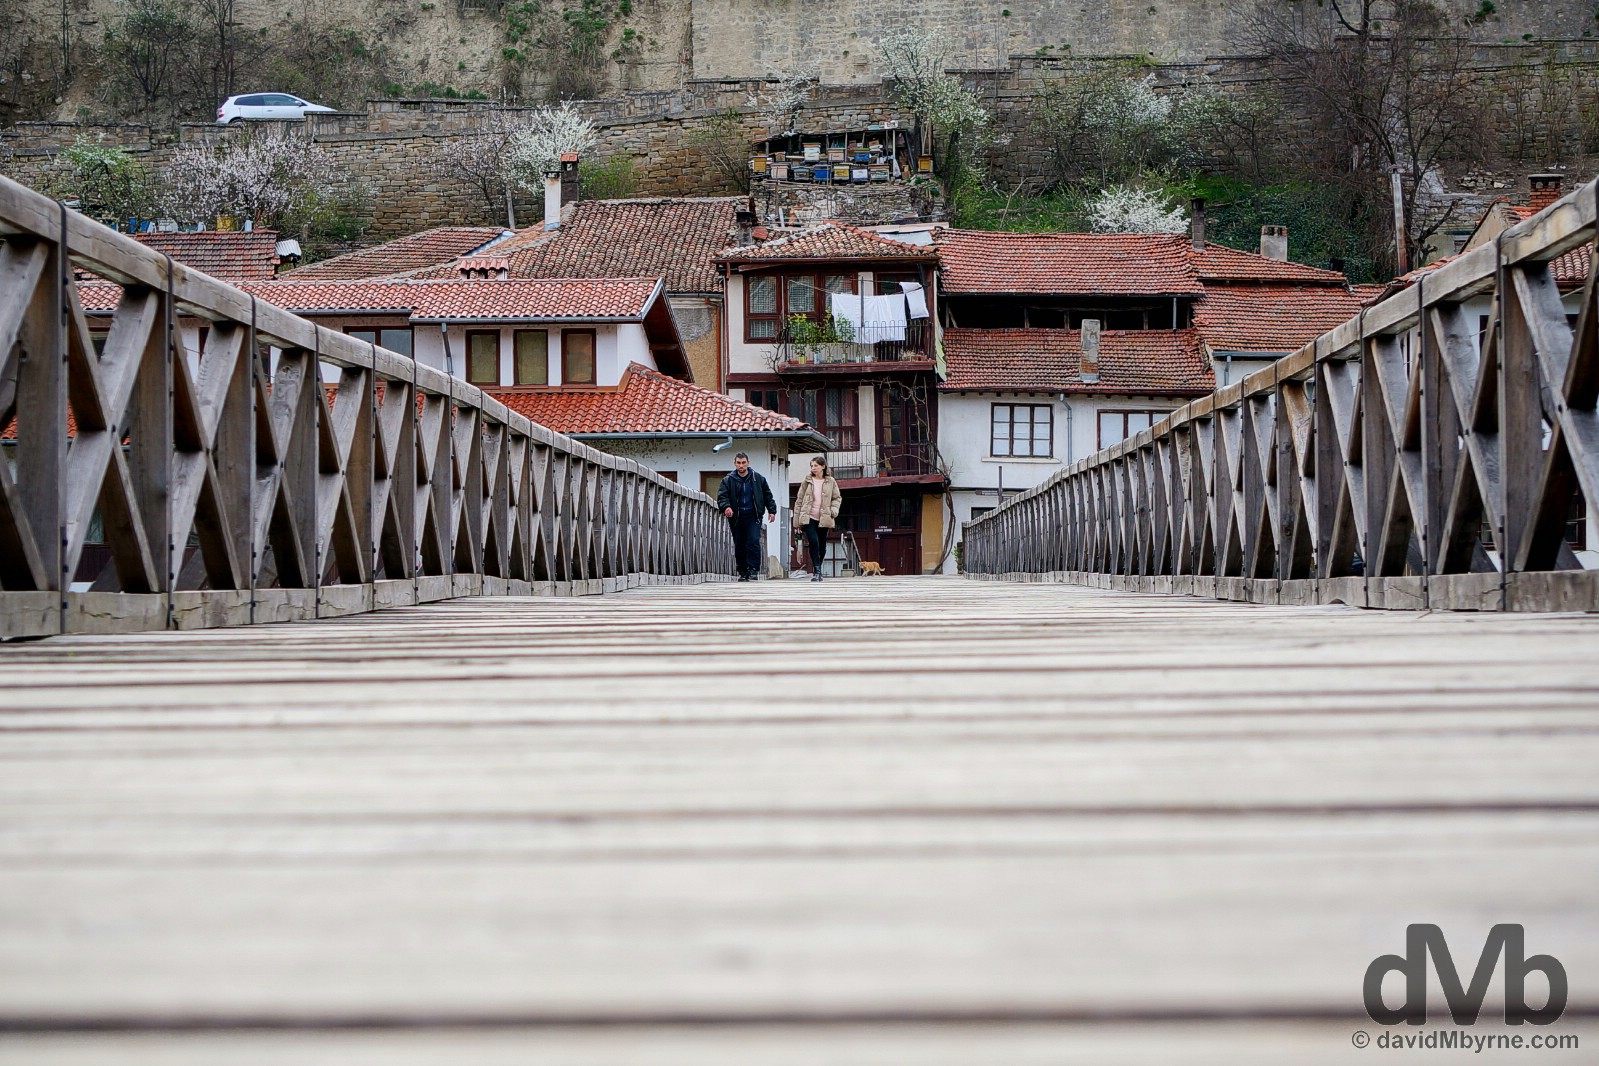 Vladishki most (Bishop's Bridge) crossing the Yantra River in Veliko Tarnovo, Bulgaria. March 30, 2015.